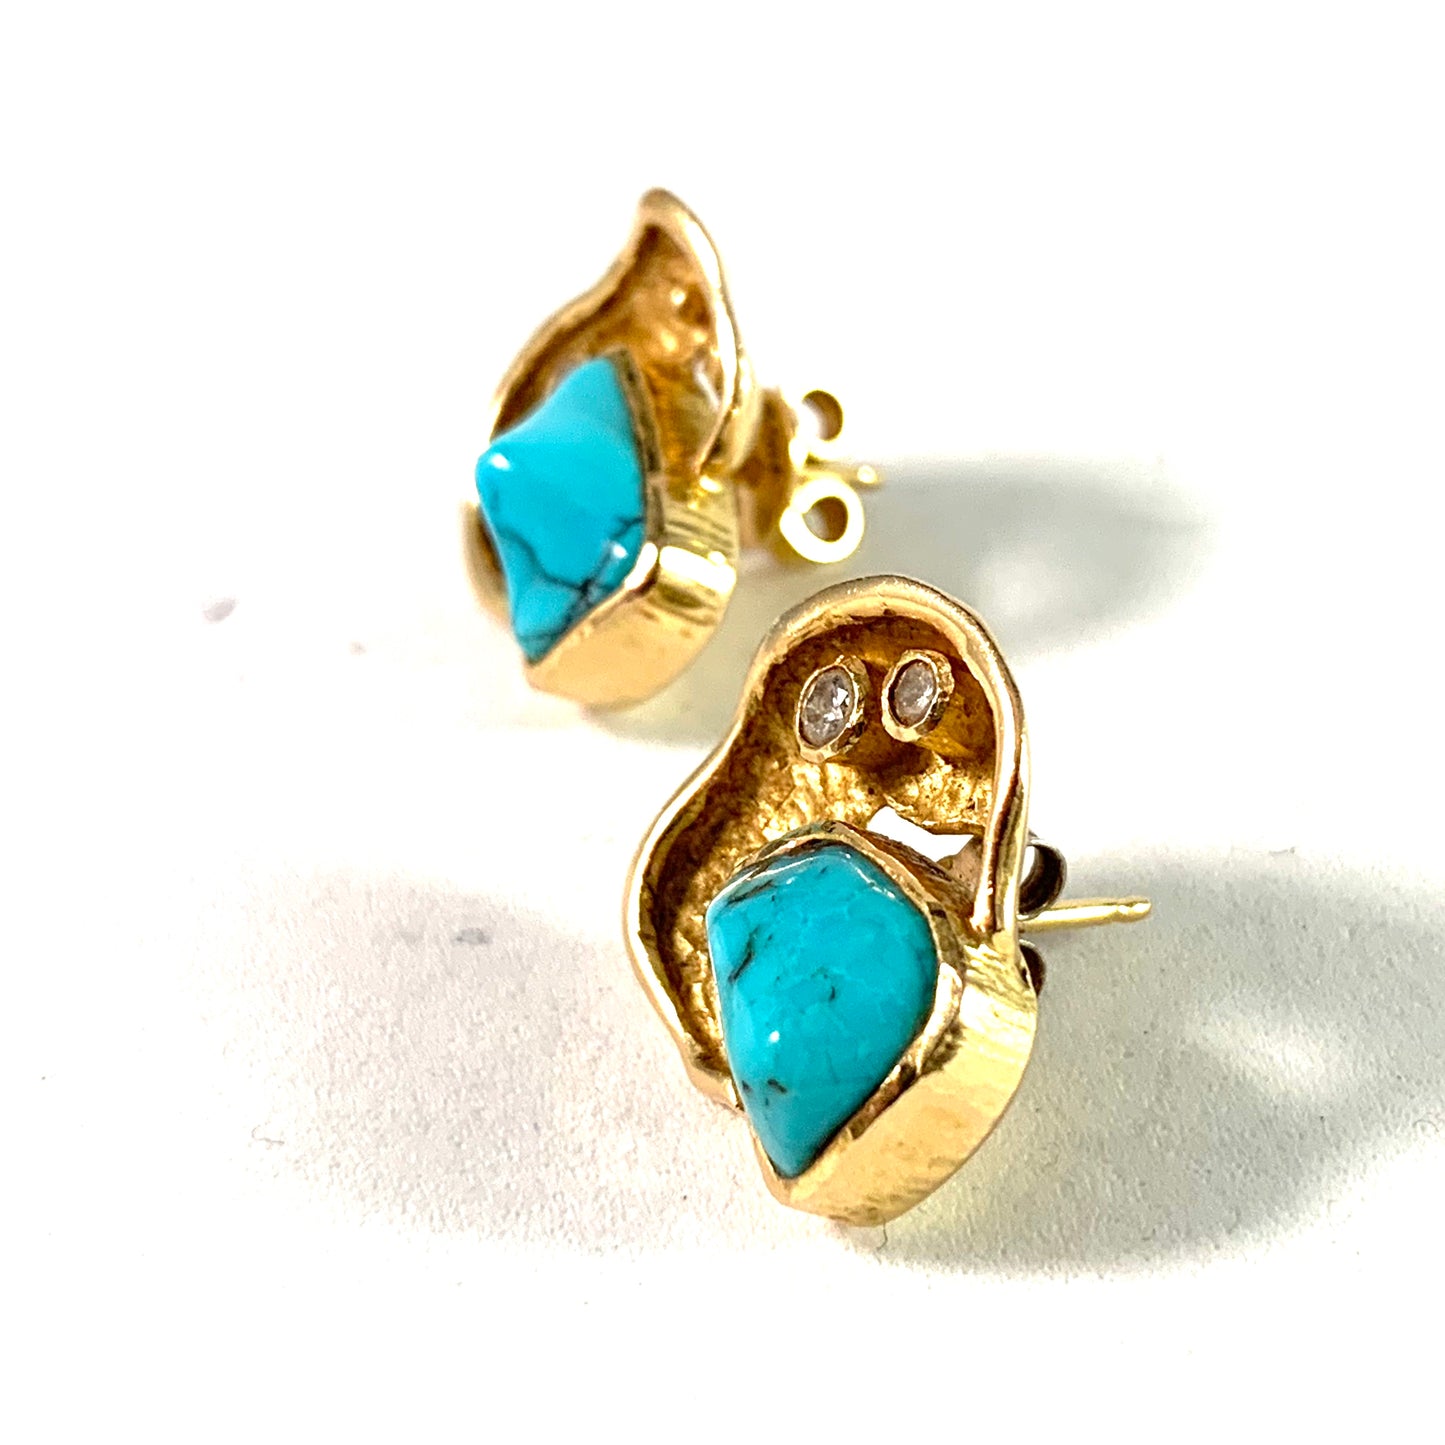 John Victor Rørvig, Denmark Vintage 18k Gold Diamond Turquoise Earrings